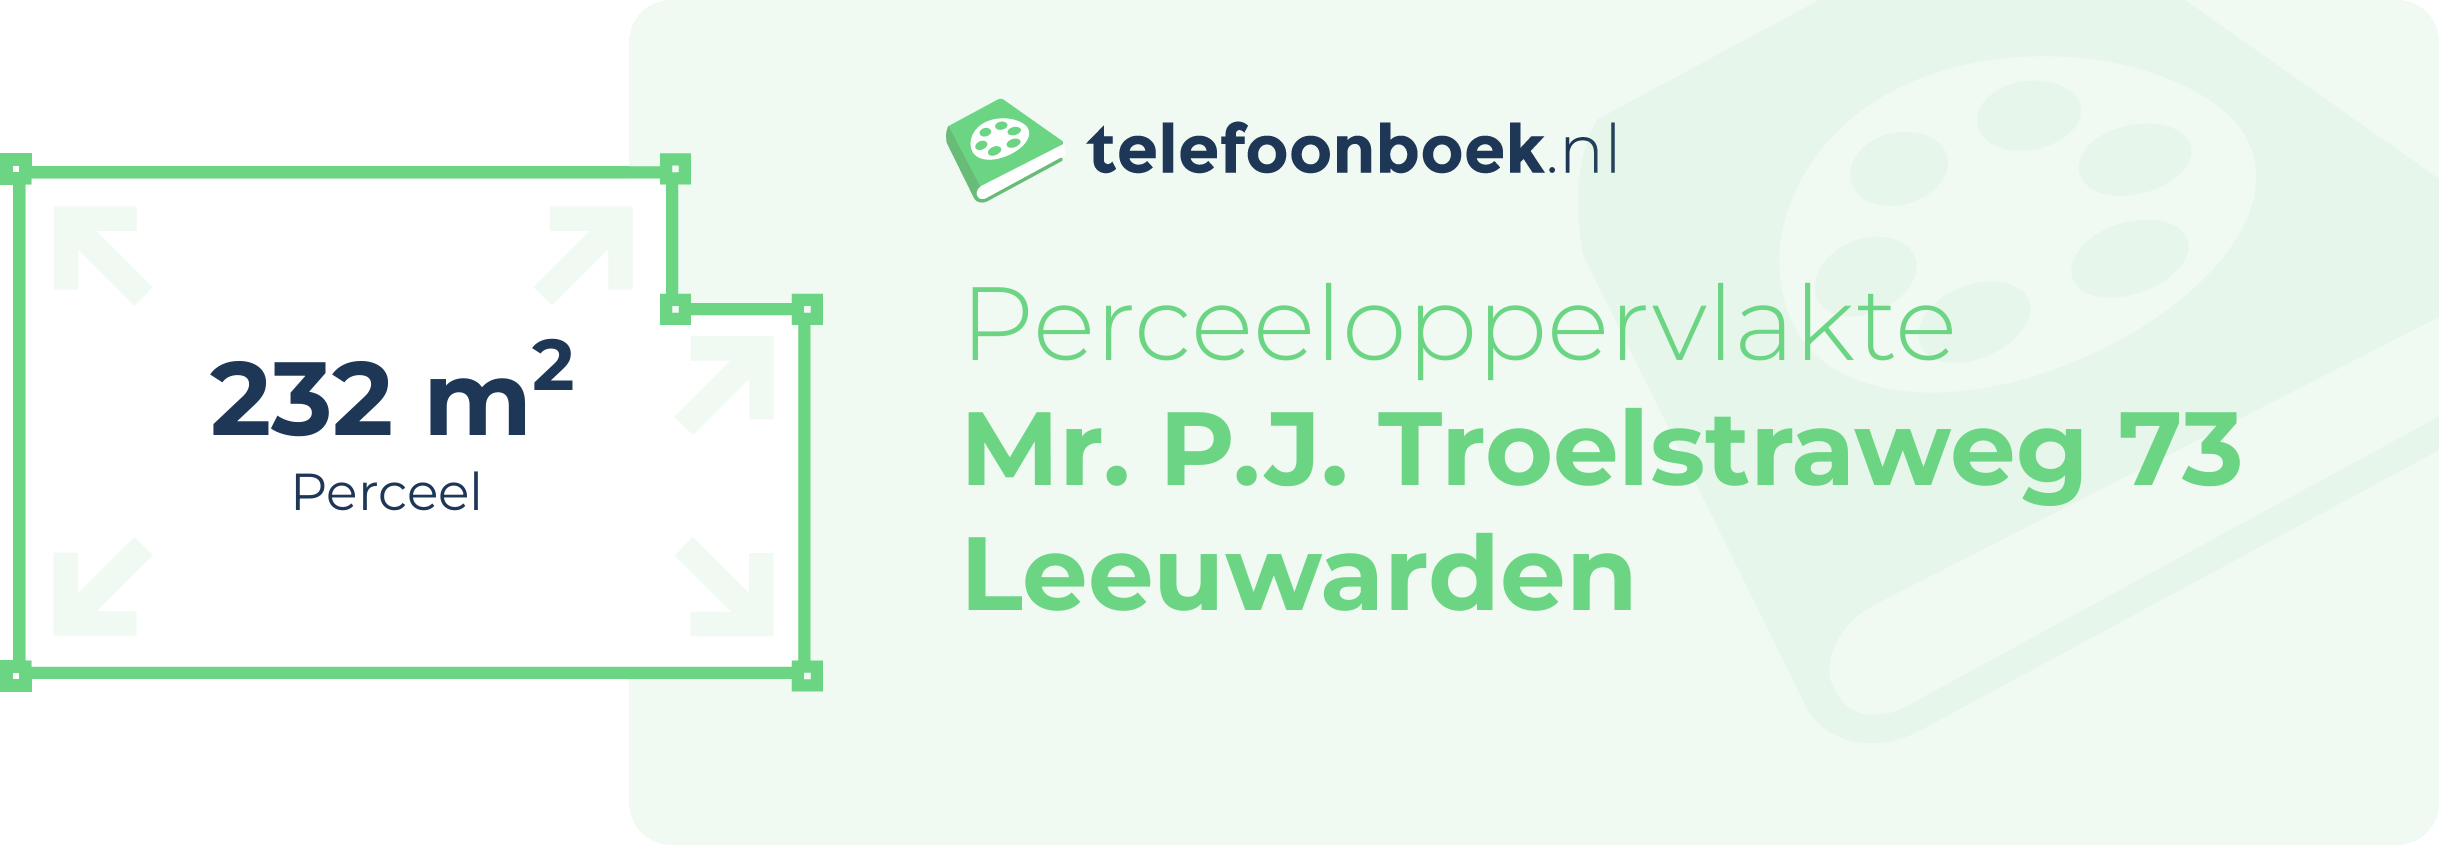 Perceeloppervlakte Mr. P.J. Troelstraweg 73 Leeuwarden